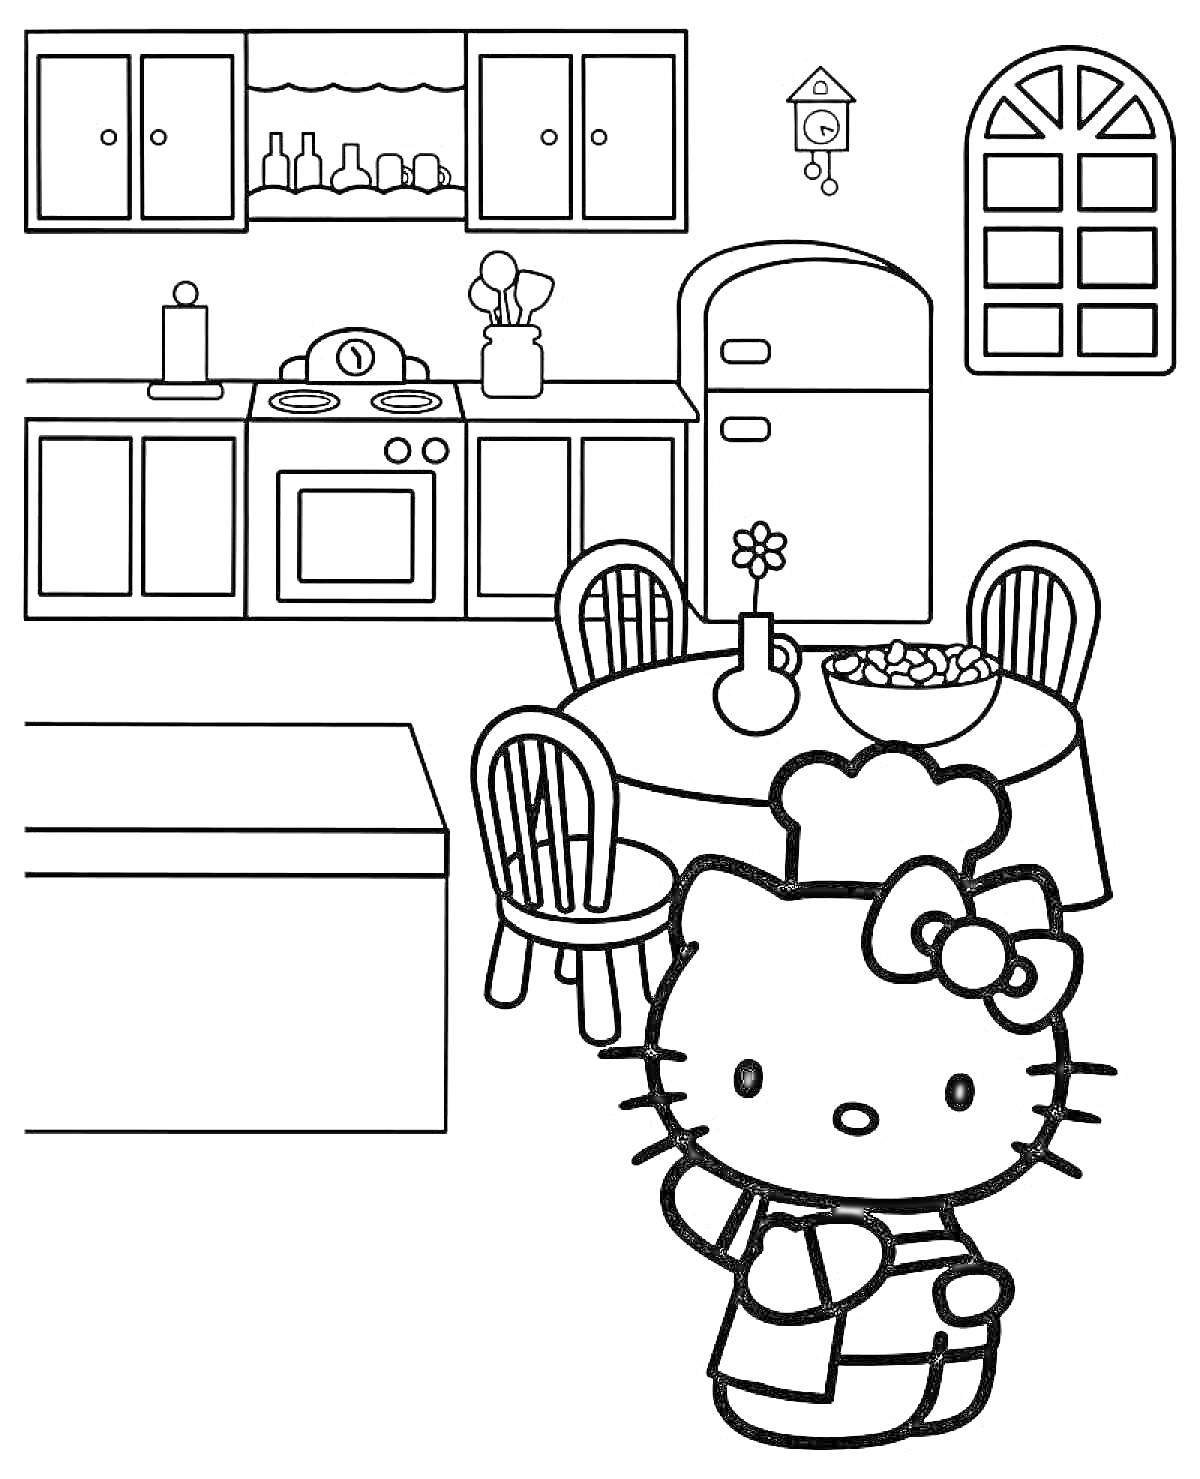 Раскраска Кухня с Hello Kitty, холодильник, шкафчики, стол с фруктами, окно, часы с кукушкой, кастрюли, вазочка с цветком, столовые стулья, кошка в фартуке